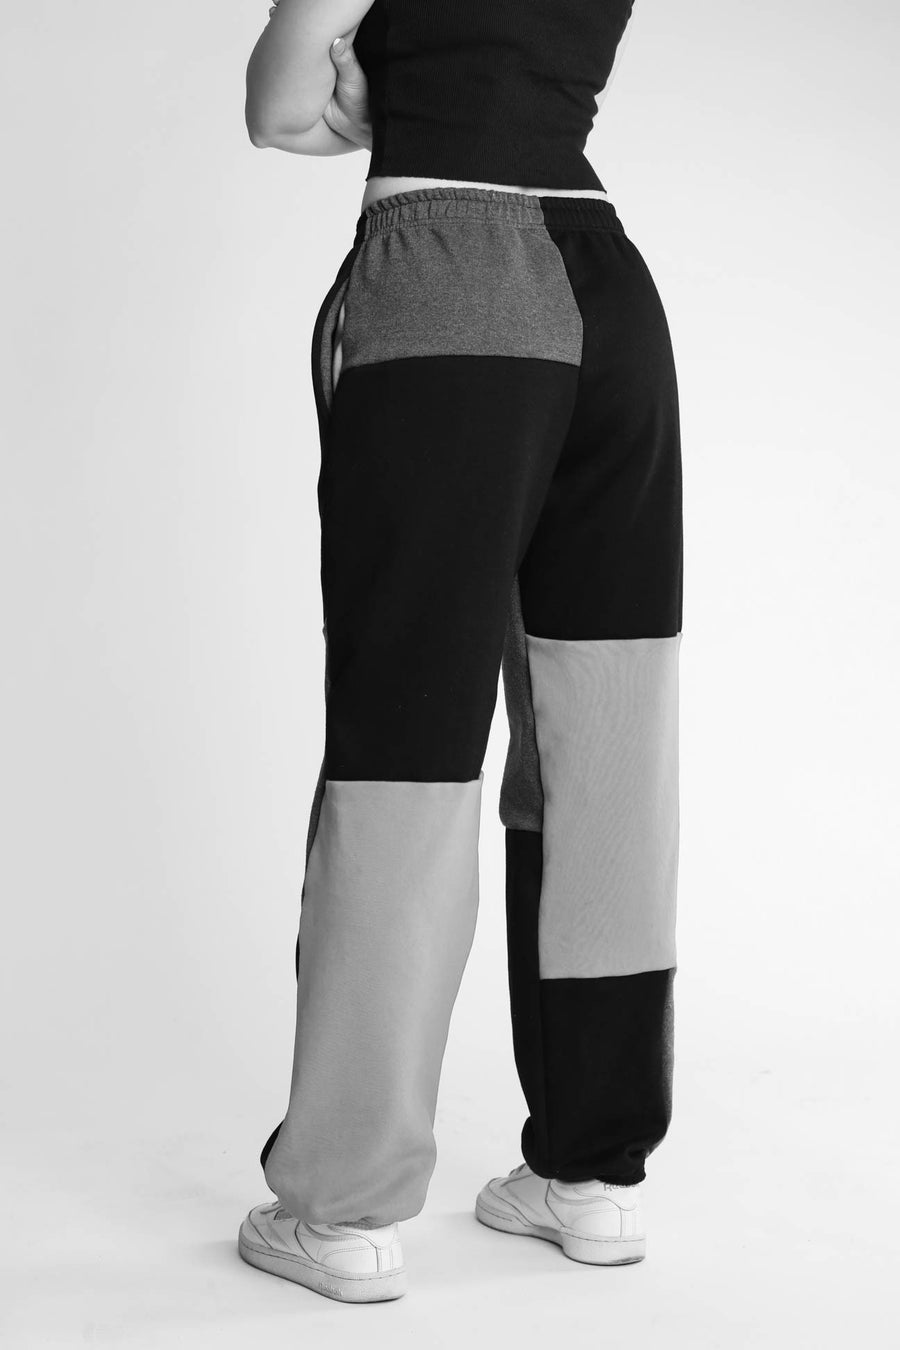 Unisex Patchwork Adidas Sweatpants - Women-M, Men-S